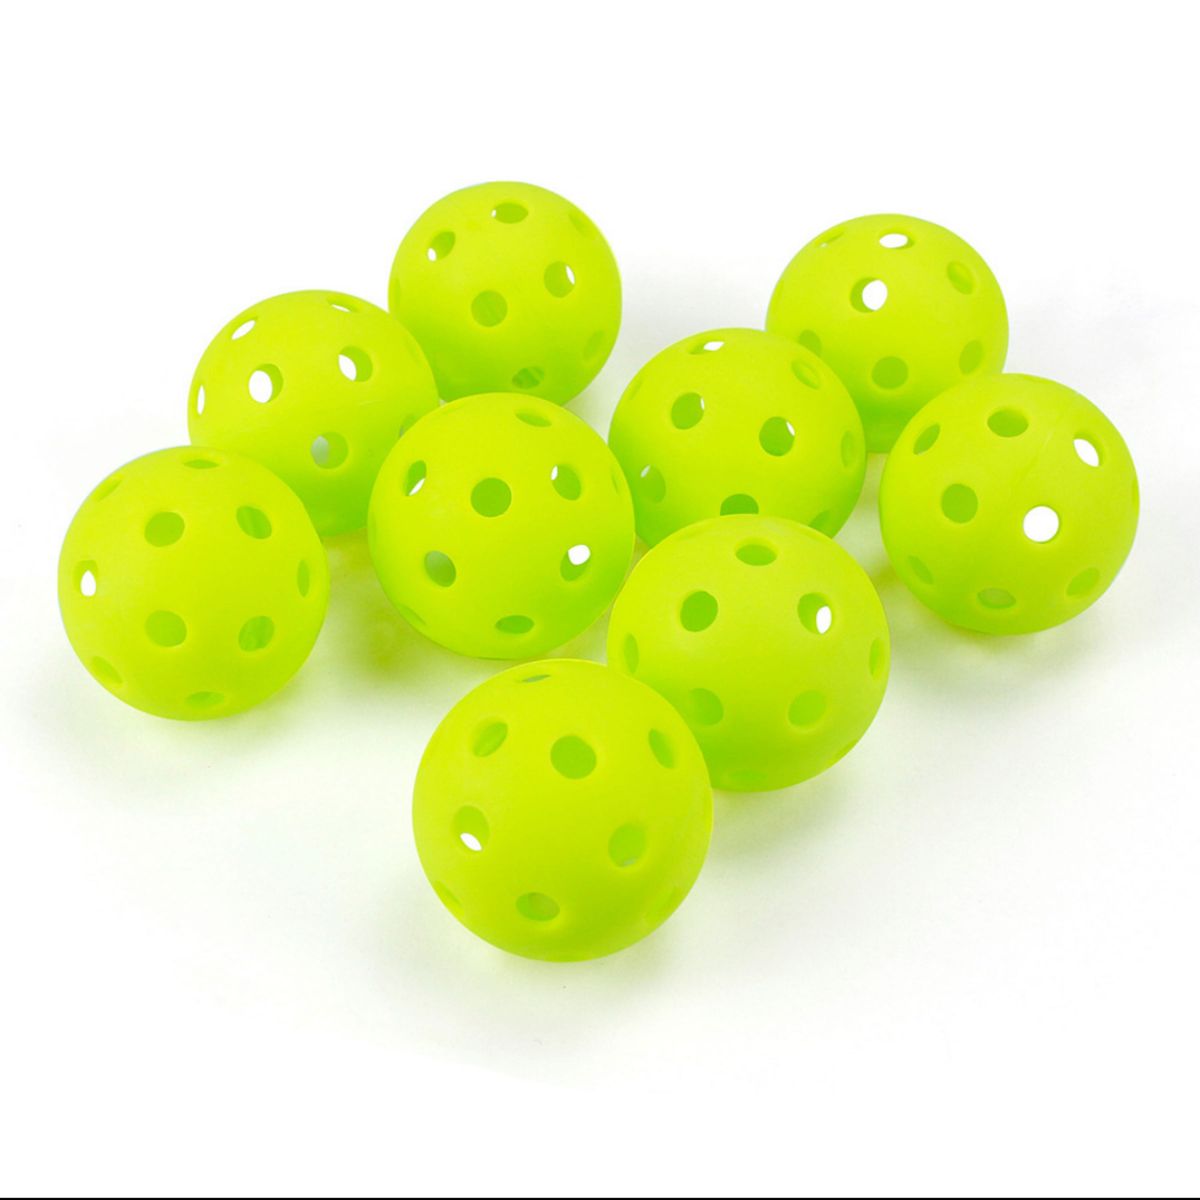 穴あきボール20個セット 直径41mm ゴルフ 球技  練習 黄緑